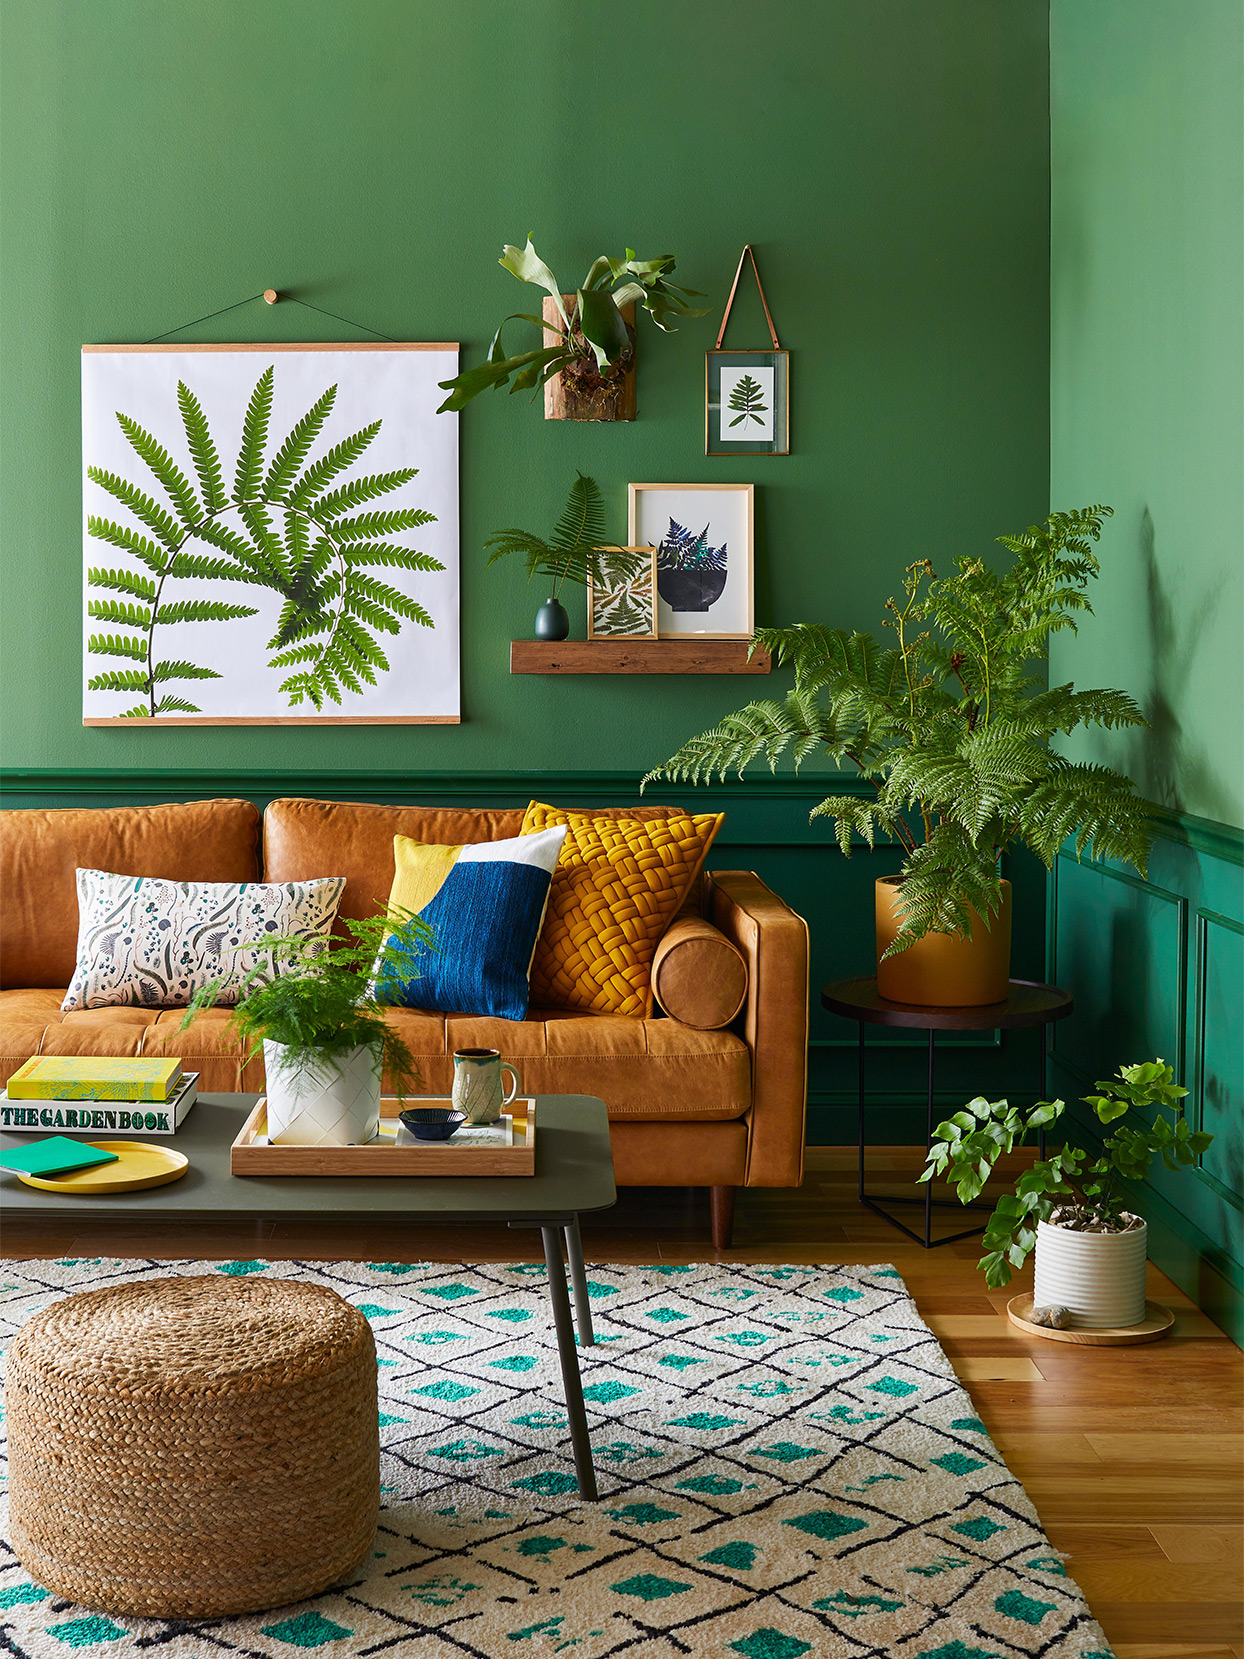 Phòng khách mùa Hè sử dụng 2 sắc thái xanh lá cây - xanh ngọc lục bảo trang trí bức tường, làm phông nền để sofa màu nâu ấm áp trở nên nổi bật. Những tán lá dương xỉ từ trên tranh đến thực tế giúp cho phòng khách nhỏ xinh nhưng sống động vô cùng!